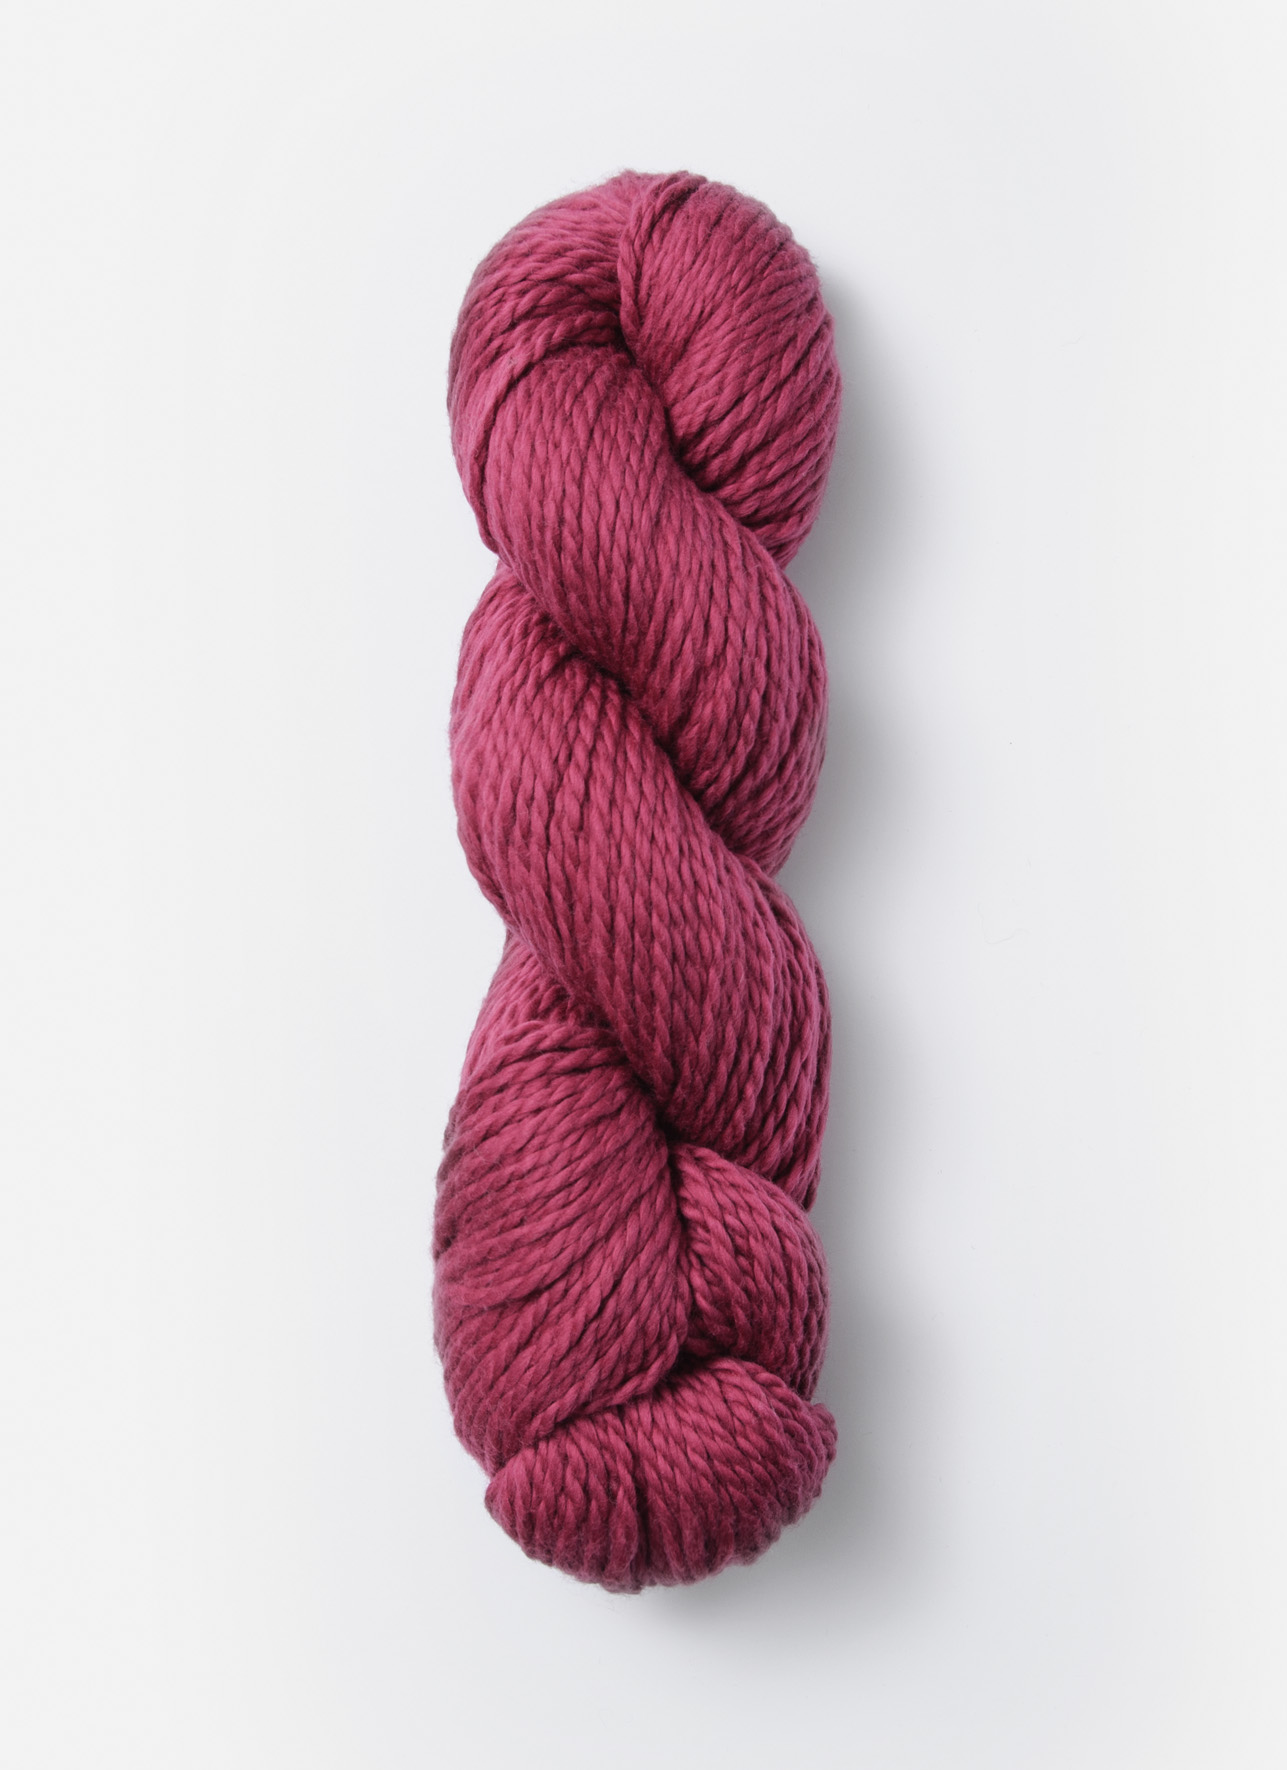 Raspberry Shepherds Wool Sport Weight Yarn